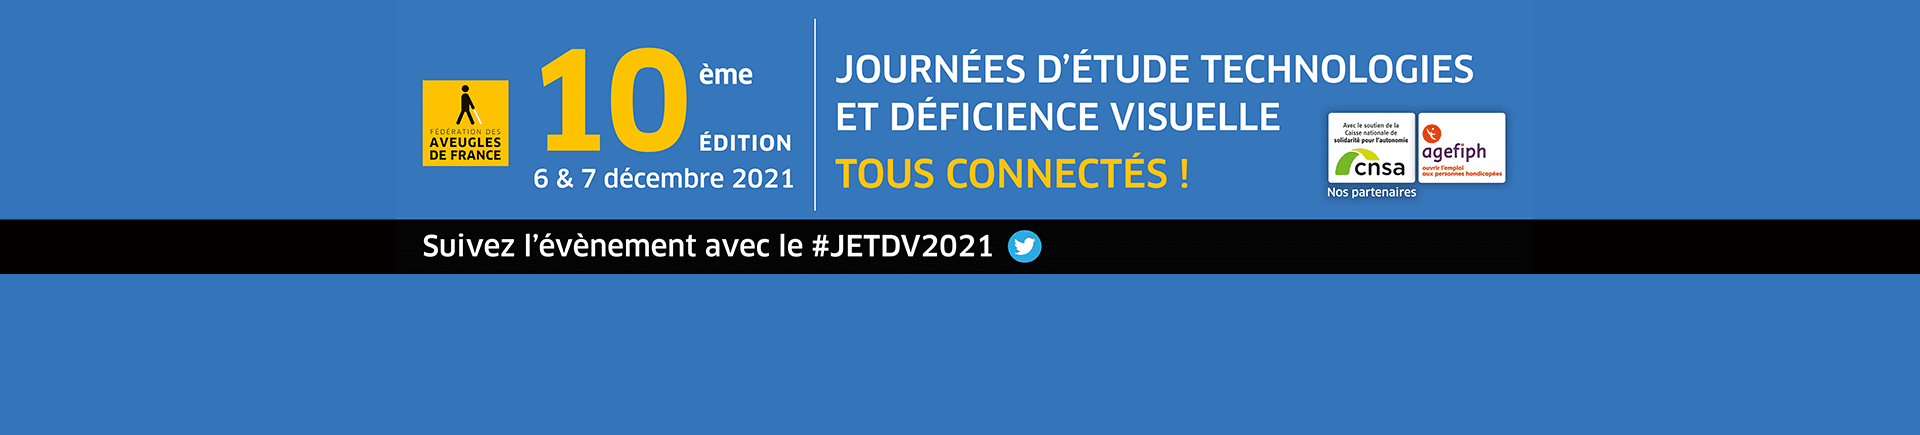 10ème édition des Journées technologie et déficience visuelle, avec le soutien de la CNSA et AGEFIPH, suivez l'événement avec le #JETDV2021